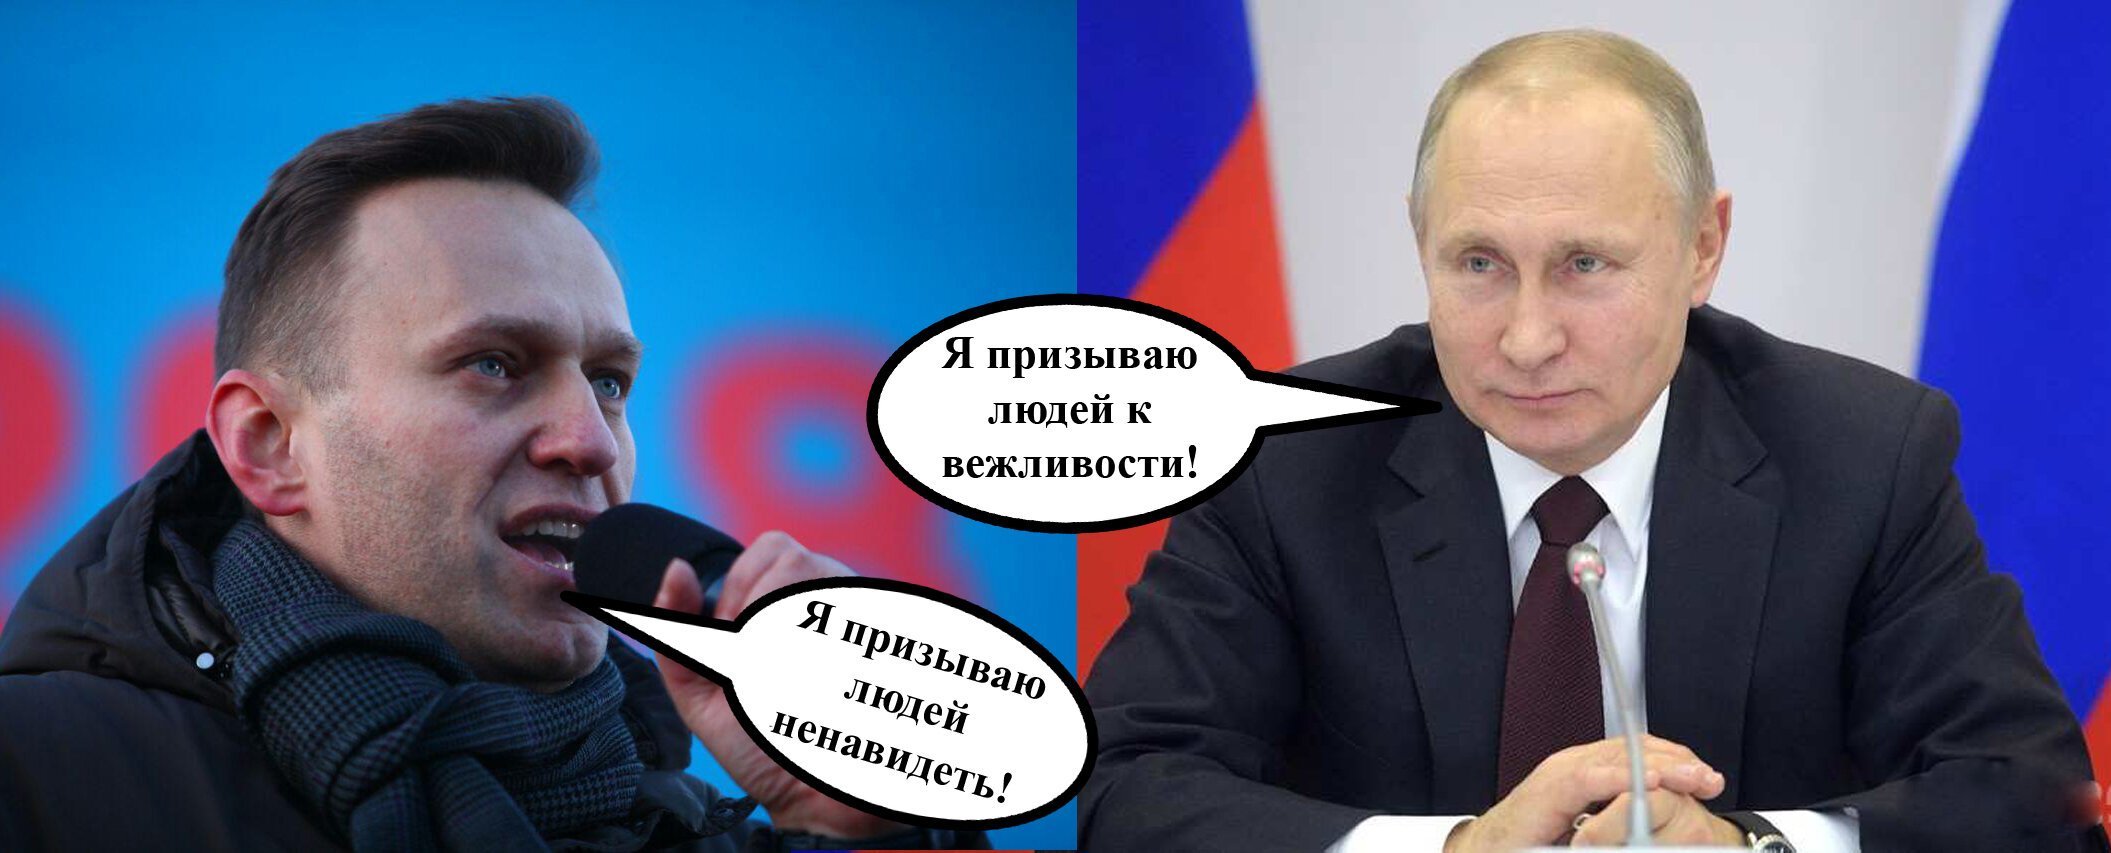 Мемы про Путина и Навального